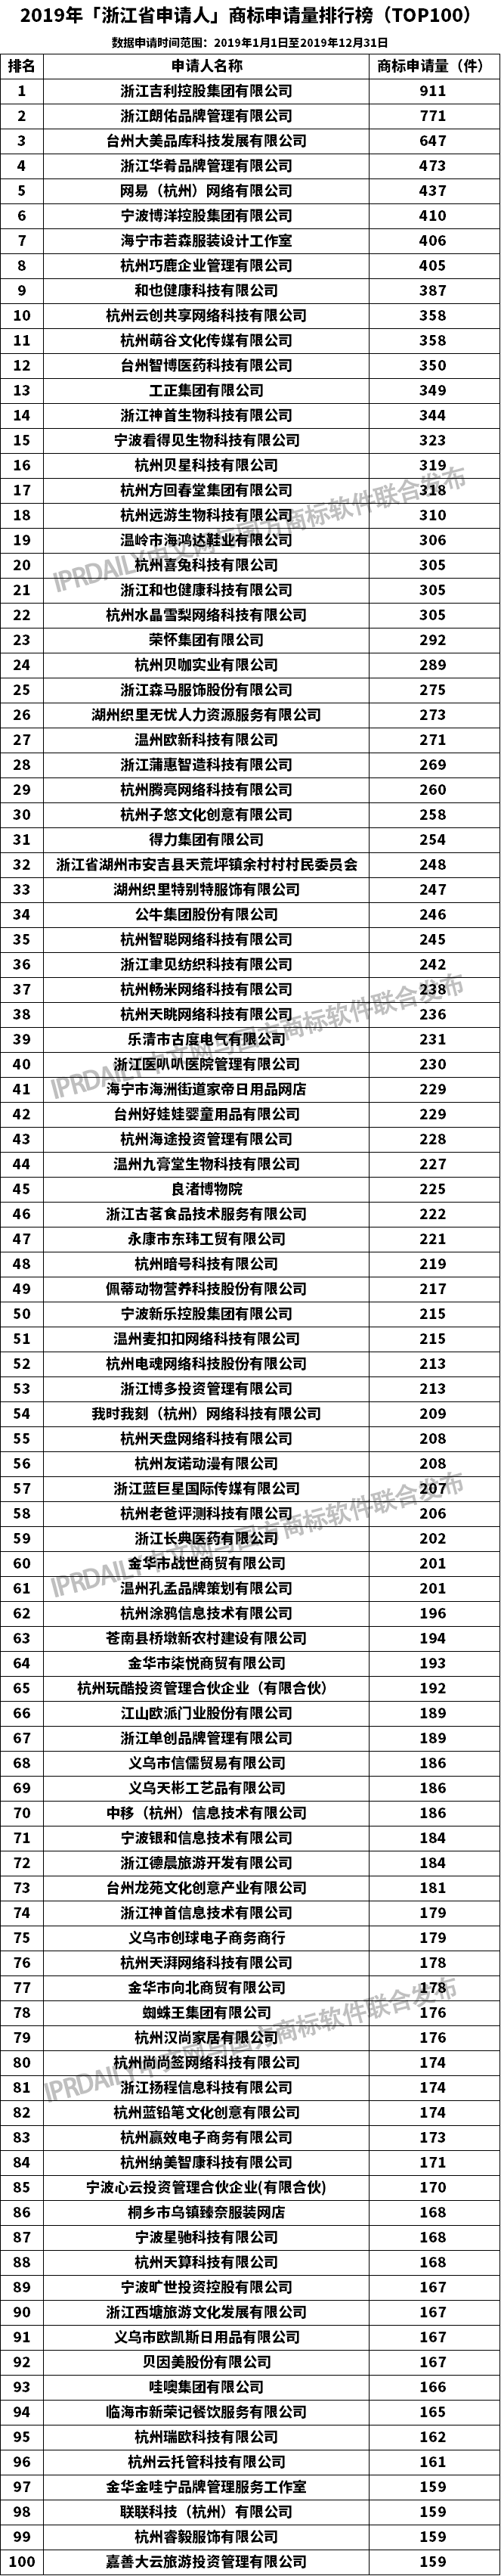 2019年「浙江省申请人」商标申请量排行榜（TOP100）